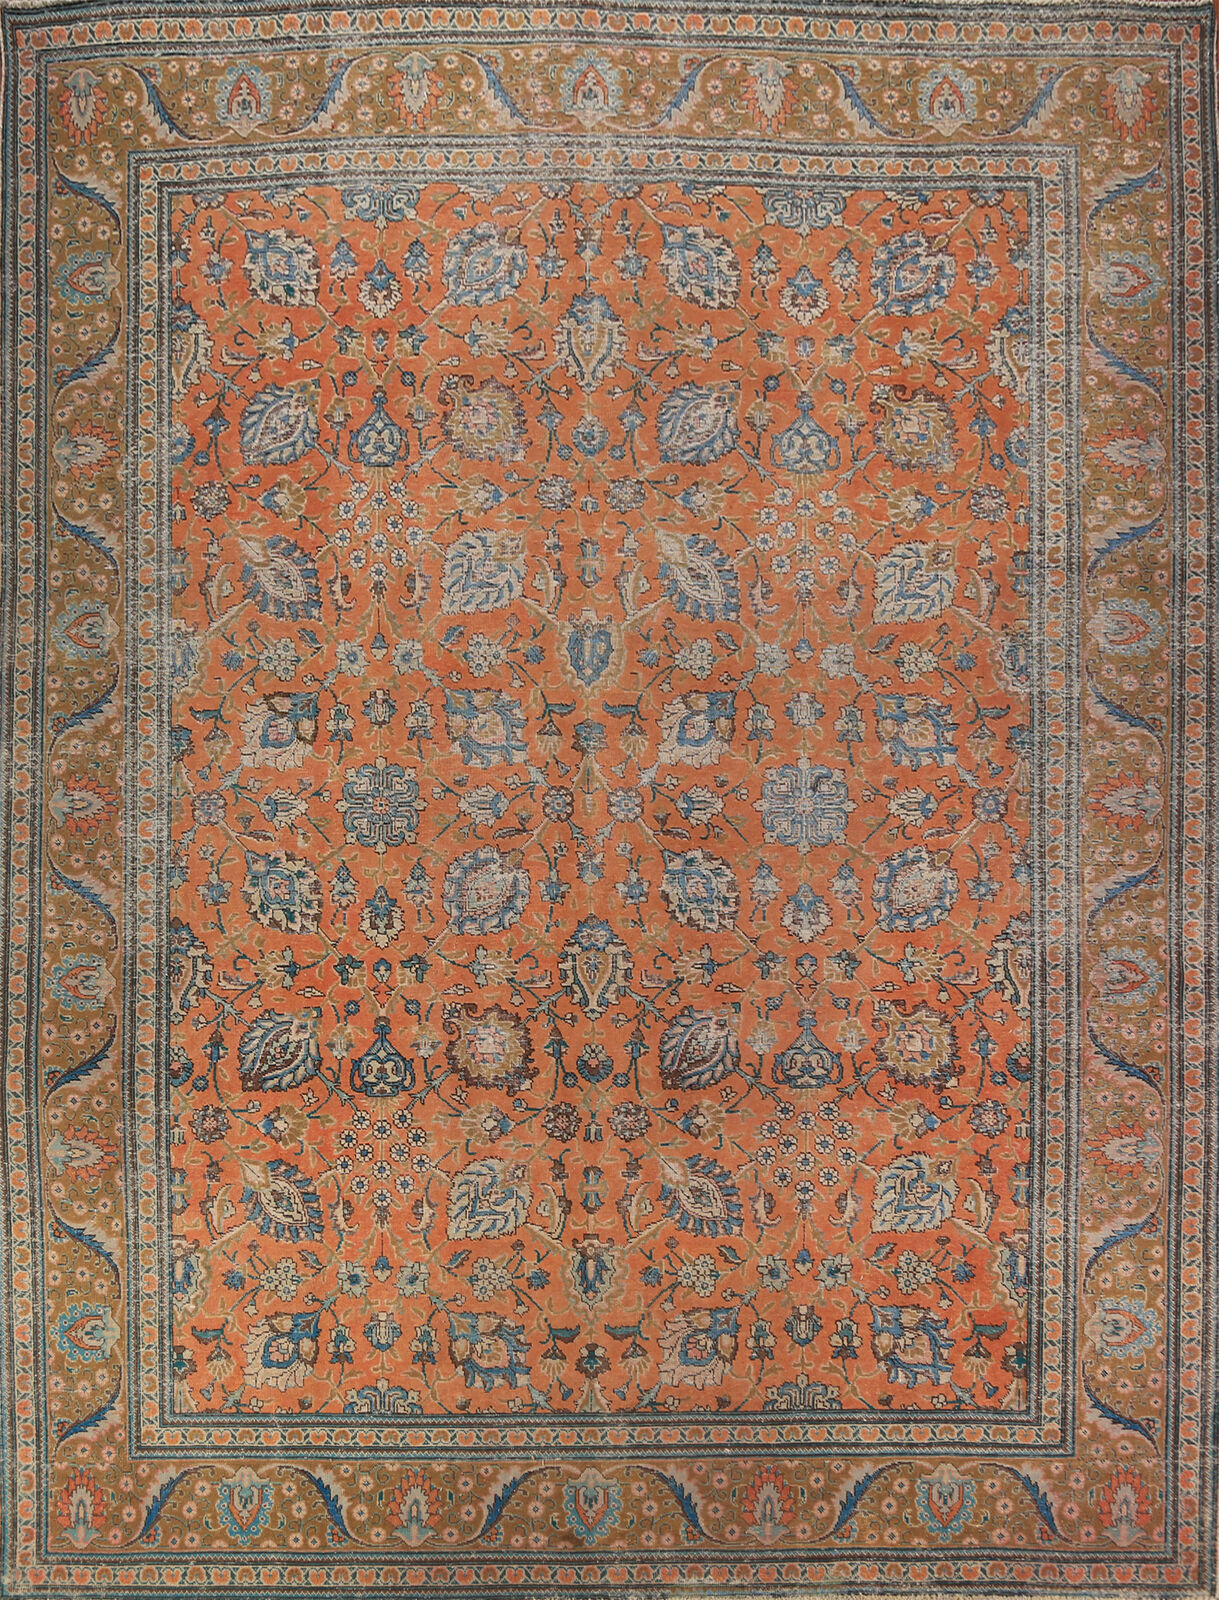 Vintage Orange Floral Tebriz Room Size Rug 10x12 Hand-made Traditional Wool Rug